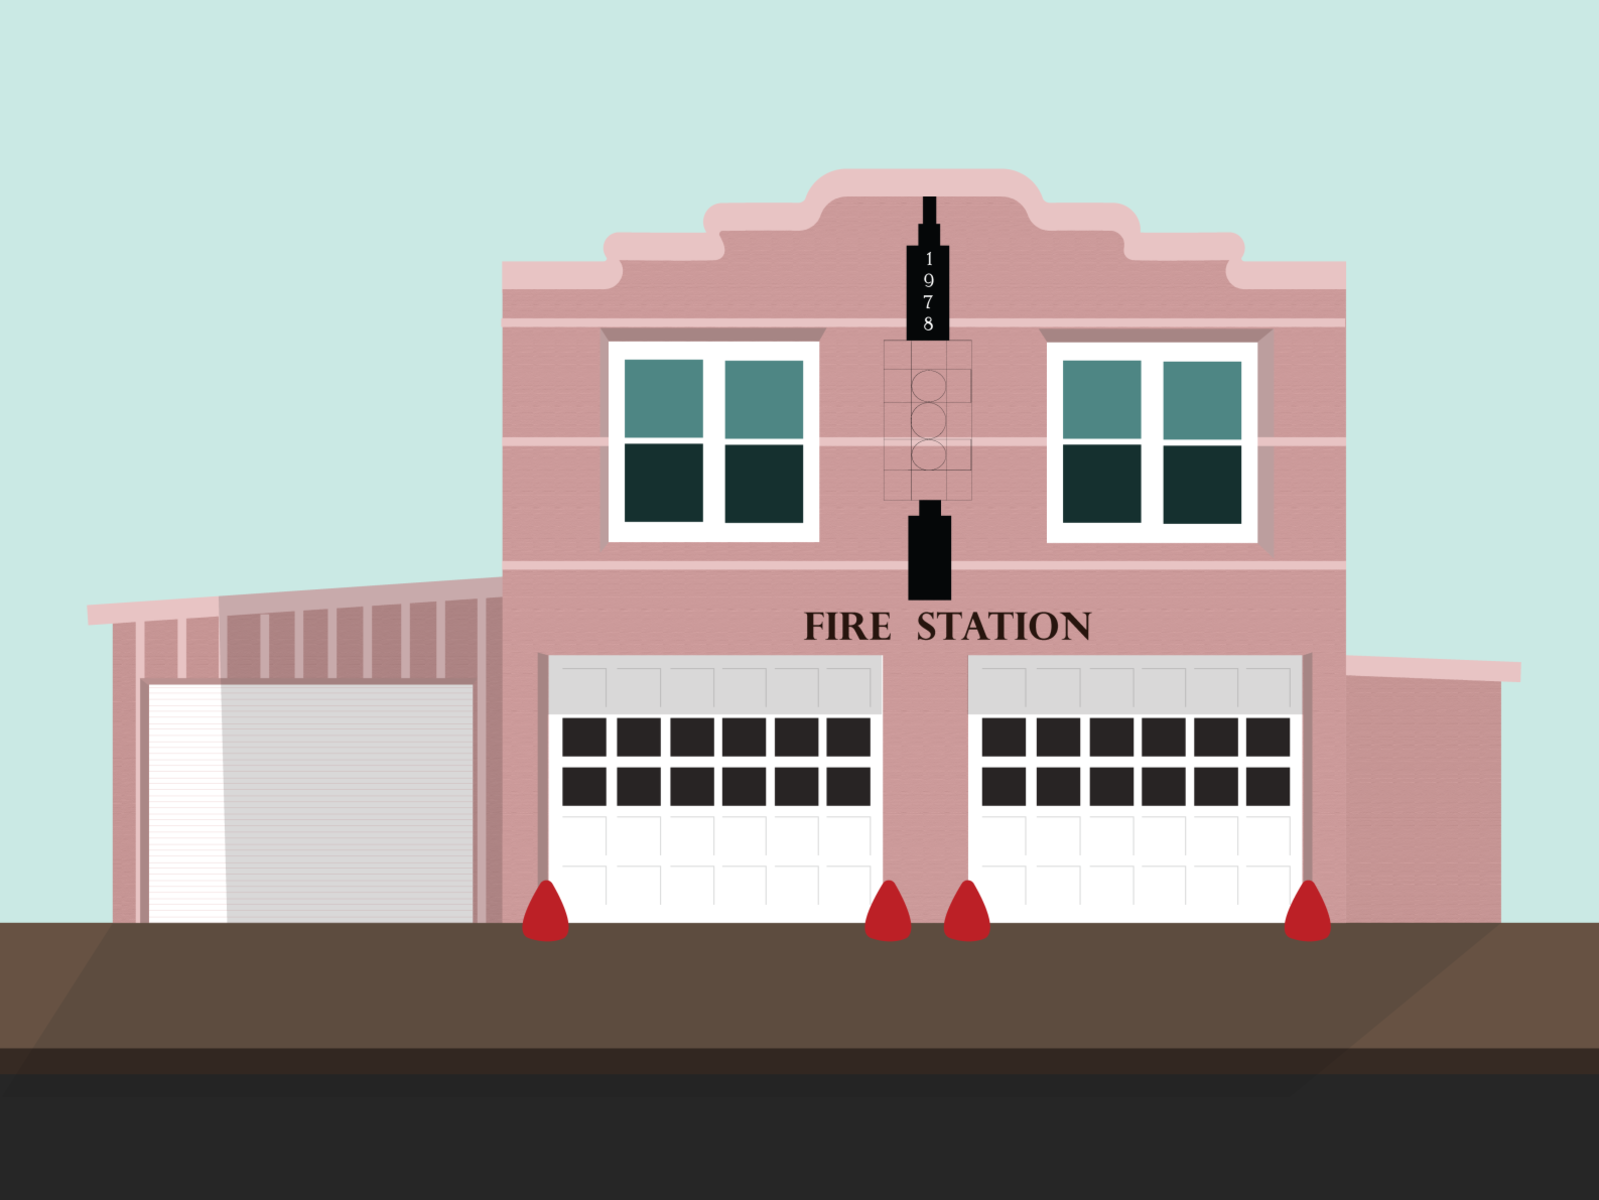 Fire Station Illustration by Ayça Kutlu on Dribbble